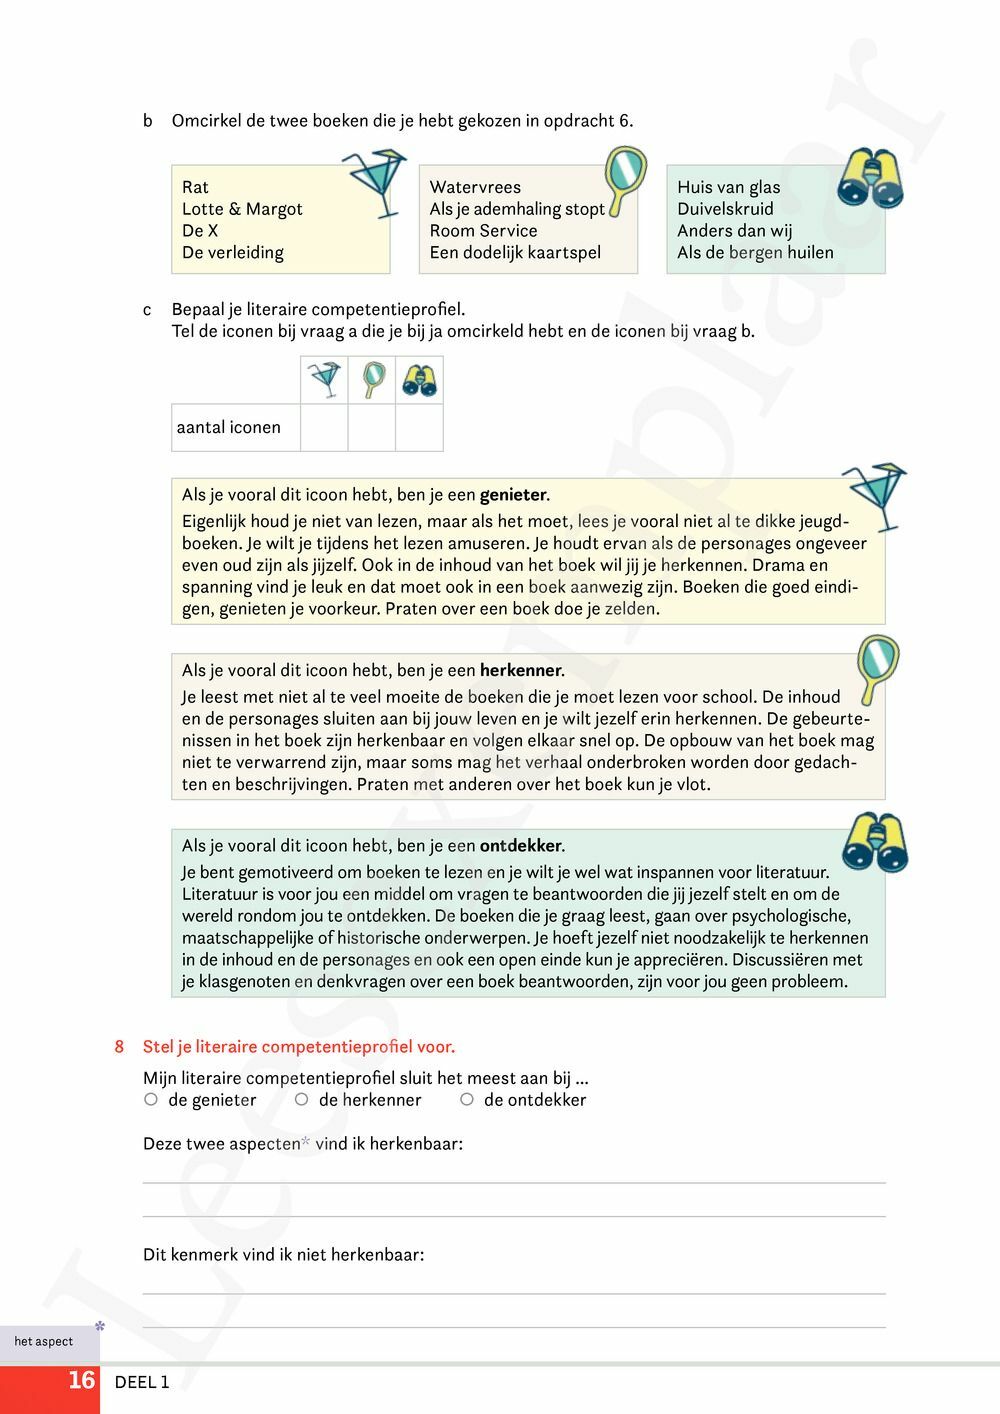 Preview: Campus Nederlands 3 Werkboek (editie 2024) (incl. Pelckmans Portaal)